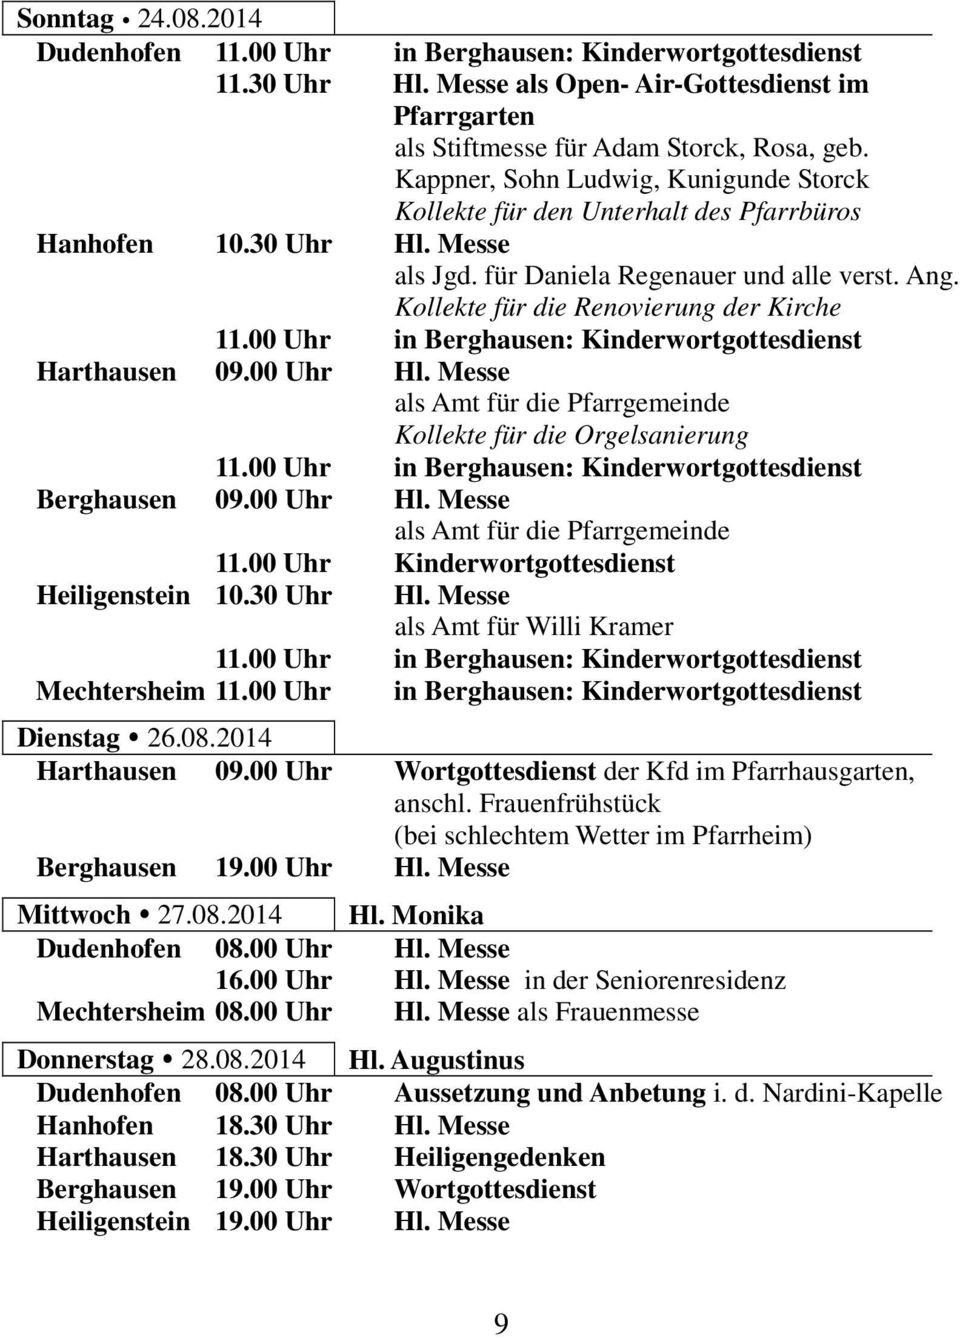 Kollekte für die Renovierung der Kirche 11.00 Uhr in Berghausen: Kinderwortgottesdienst Harthausen 09.00 Uhr Hl. Messe als Amt für die Pfarrgemeinde Kollekte für die Orgelsanierung 11.